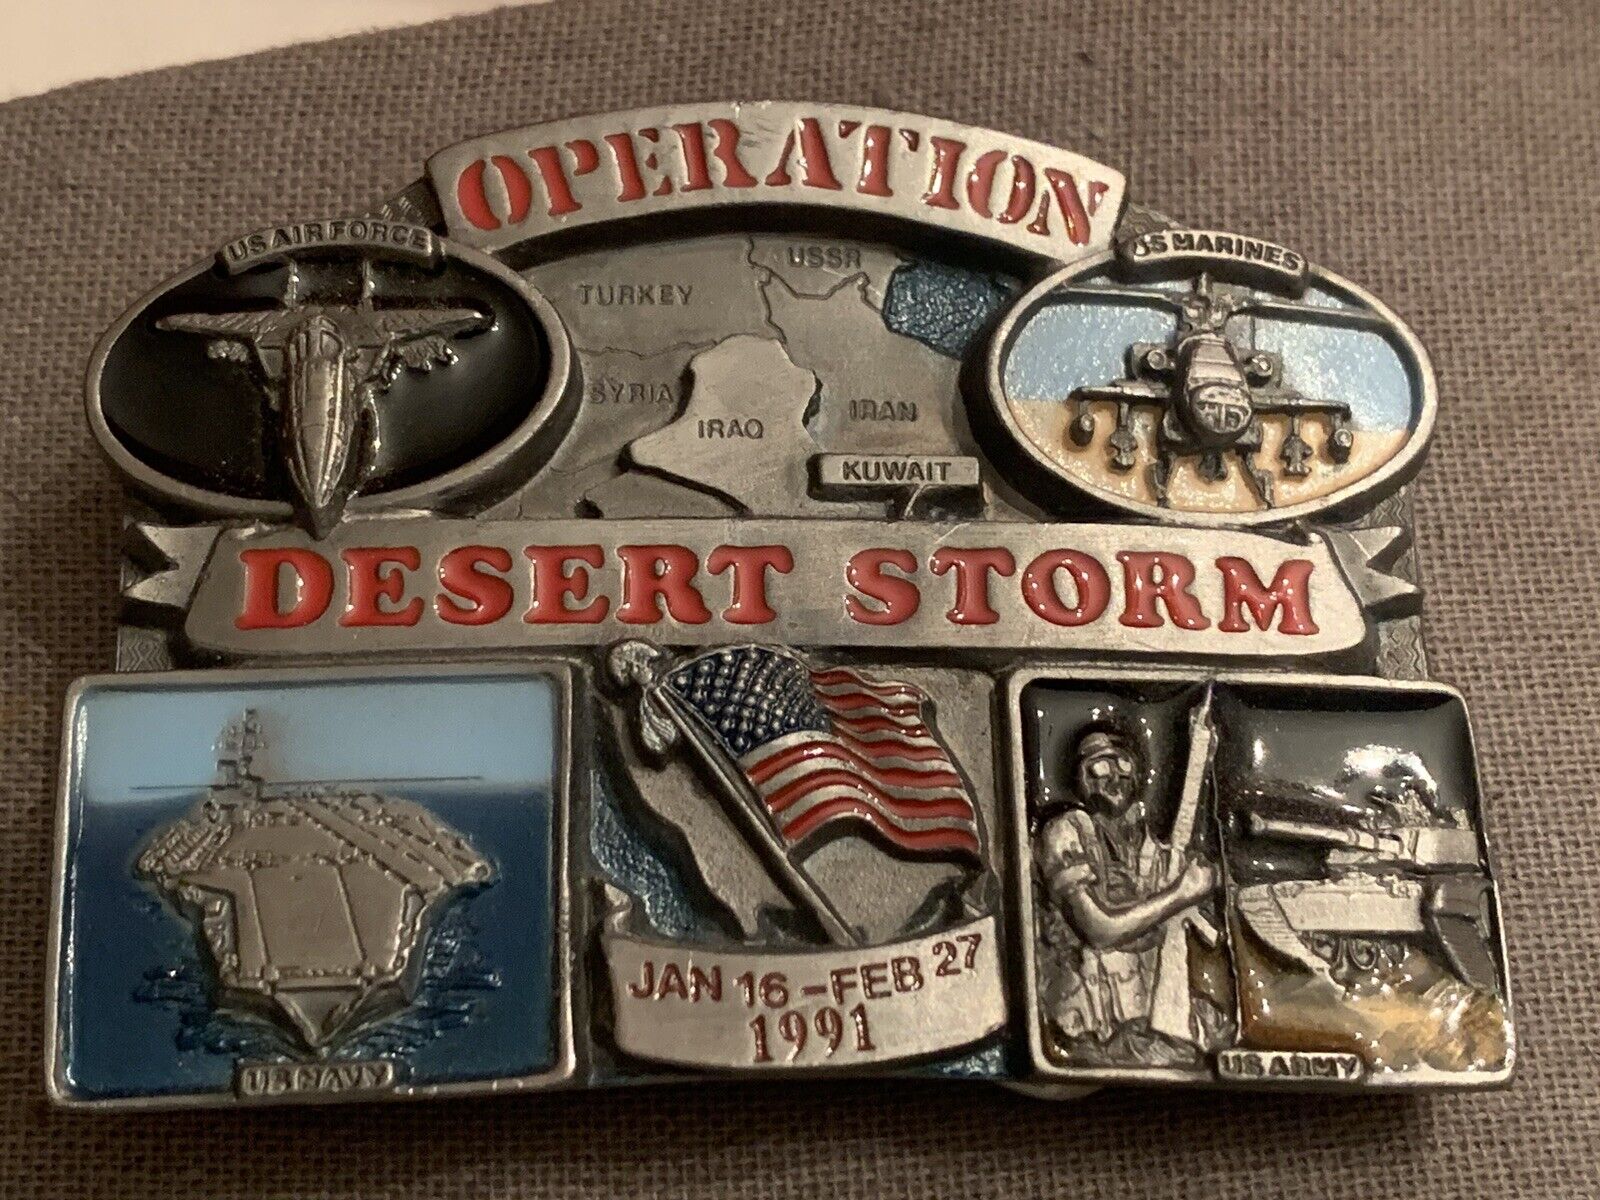 Vintage Belt Buckle - Operation Desert Storm (Jan 16, 1991) Limited Edition